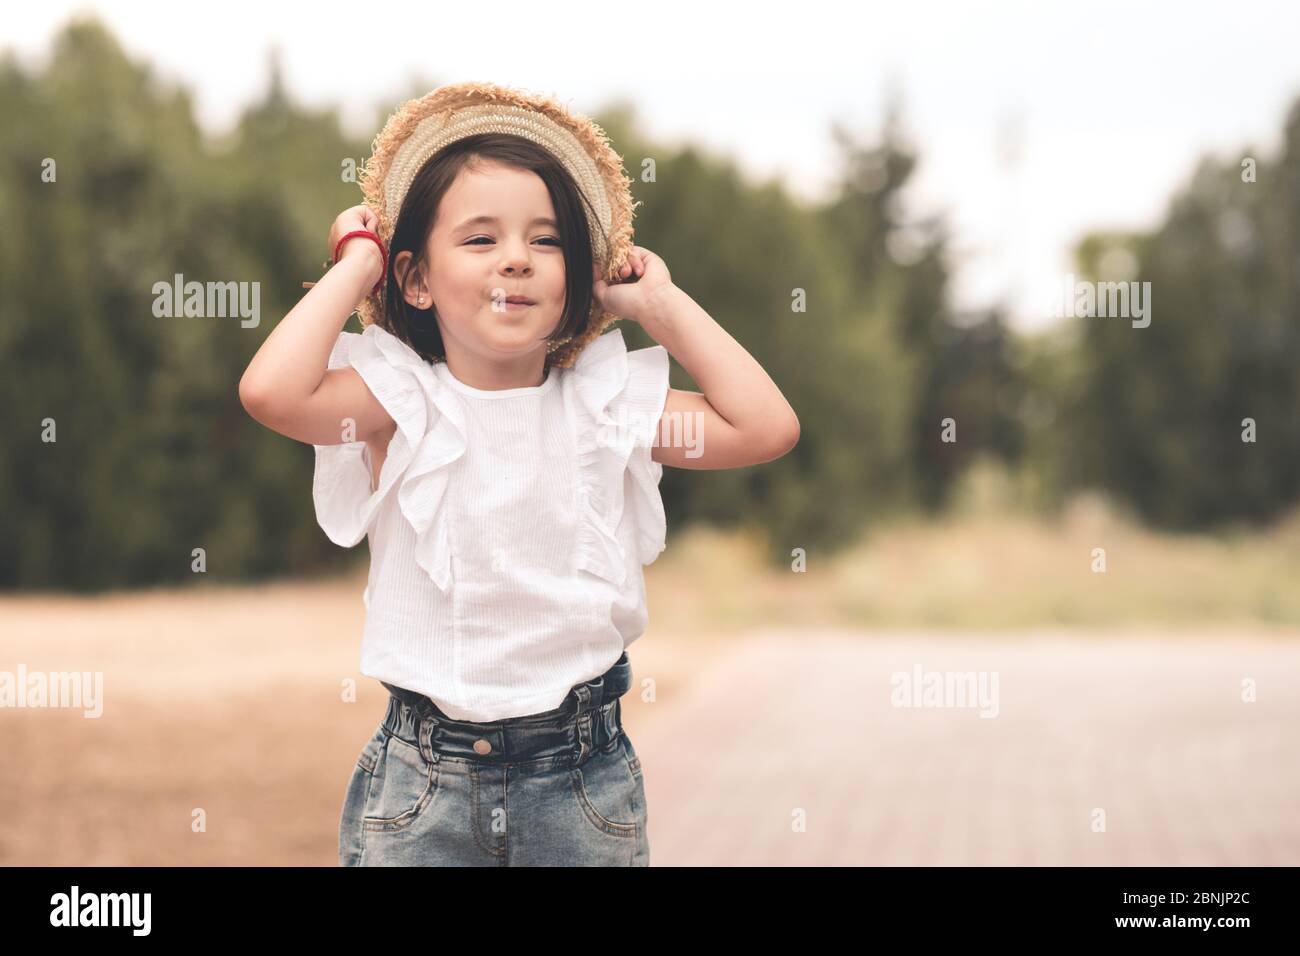 Drôle mignon enfant fille 3-4 ans tenant chapeau de paille portant le  dessus blanc et short en denim posant dans le parc sur fond de nature.  Bonheur. Assaisonnement d'été Photo Stock -